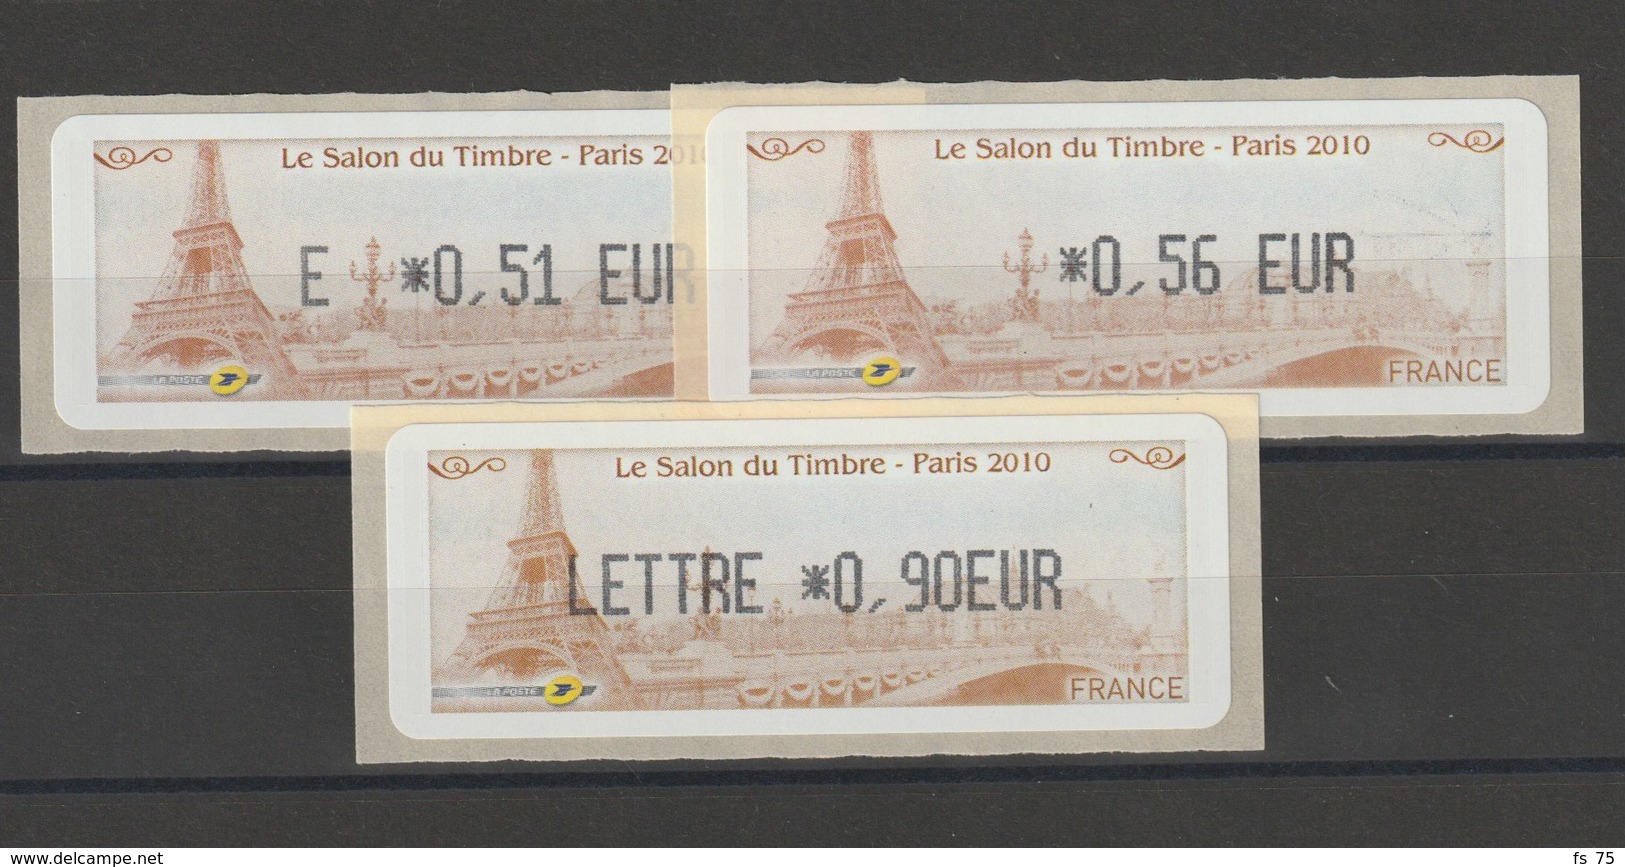 FRANCE - 3 VIGNETTES 0,51€, 0,56€ ET 0,90€ - LE SALON DU TIMBRE PARIS 2010 - 2010-... Abgebildete Automatenmarke